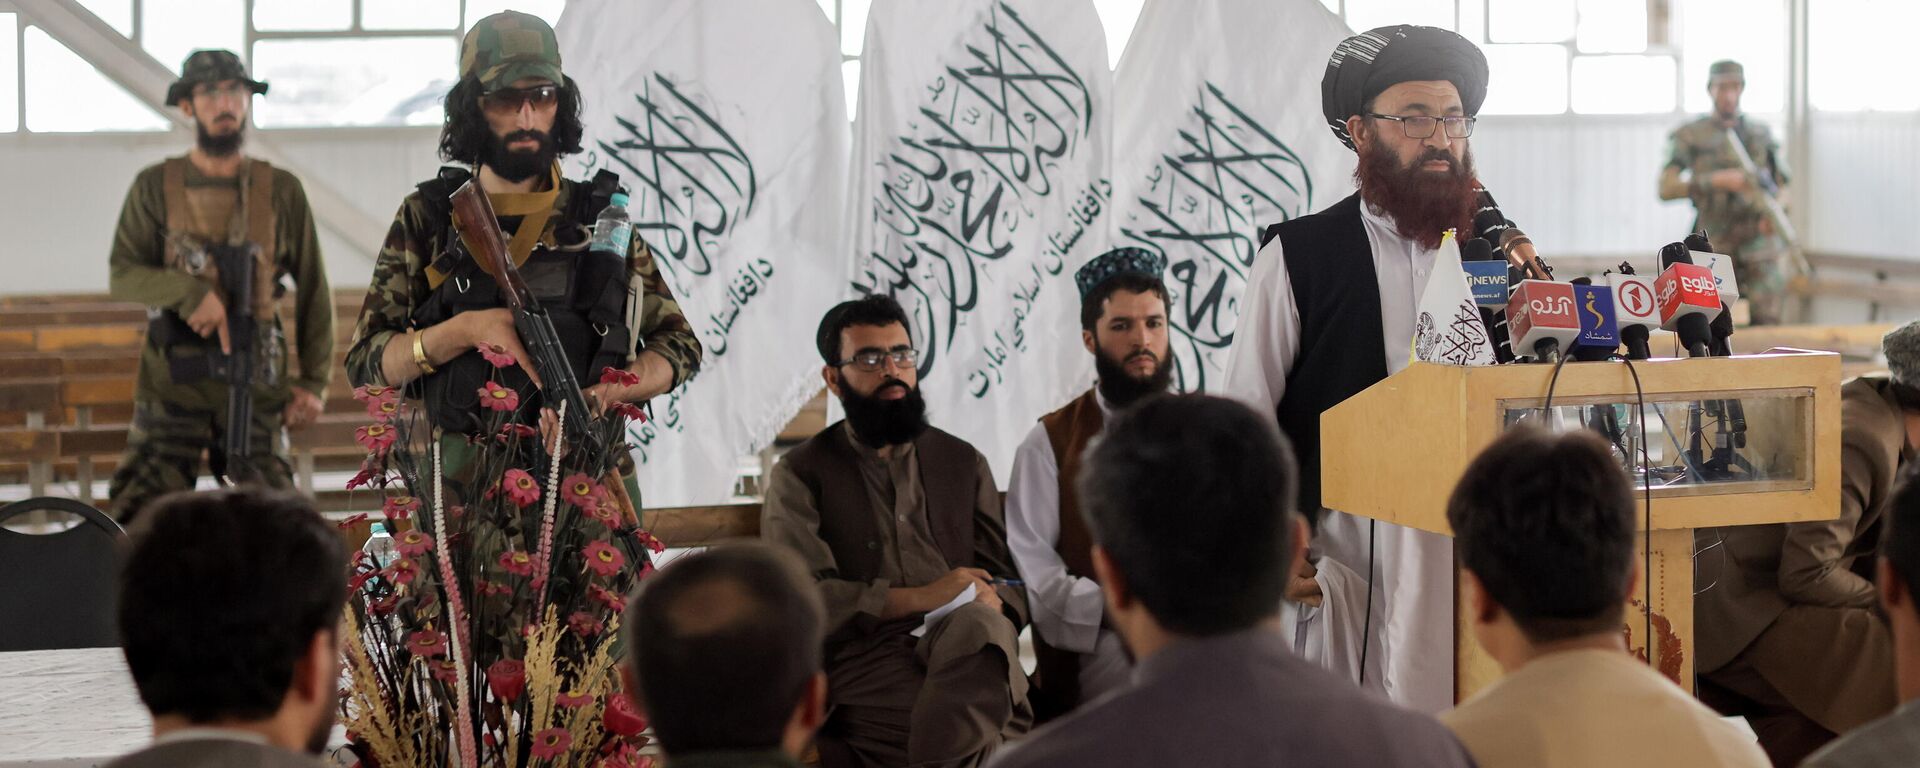 Funcionarios talibanes de Afganistán asisten a una rueda de prensa en la que anunciaron que volverán a emitir pasaportes a sus ciudadanos luego de meses de demoras que obstaculizaron los intentos de quienes intentaban huir del país, en Kabul, Afganistán, el 5 de octubre de 2021 - Sputnik Mundo, 1920, 24.10.2021